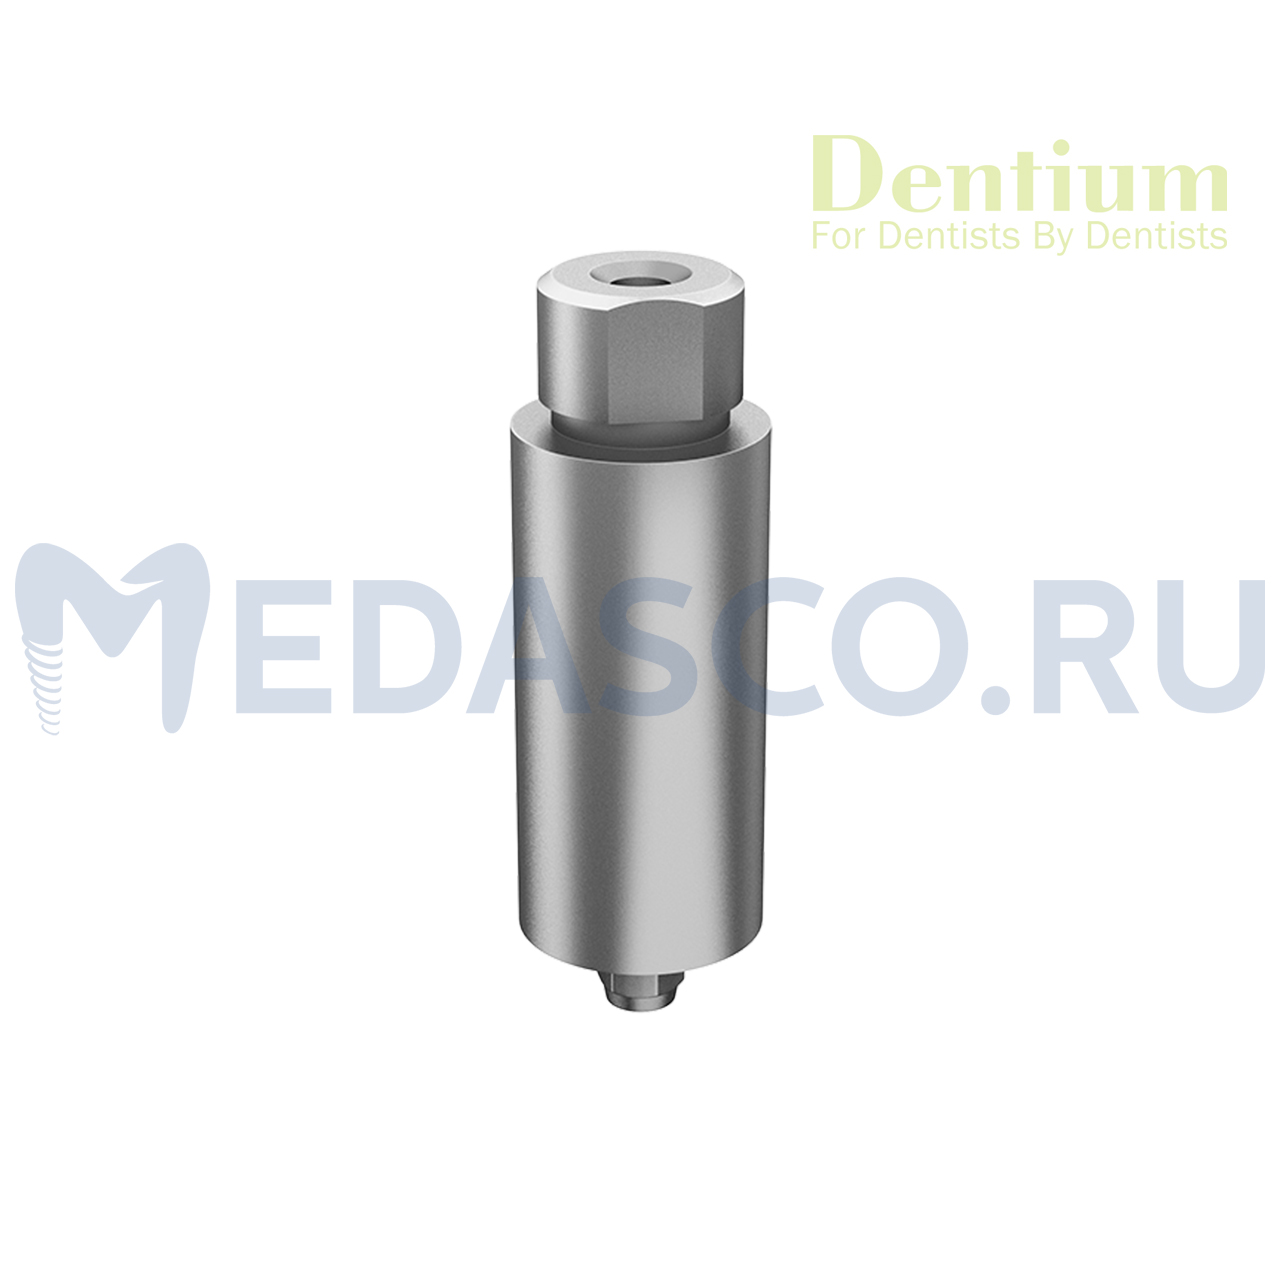 Dentium / implantium pre-milled